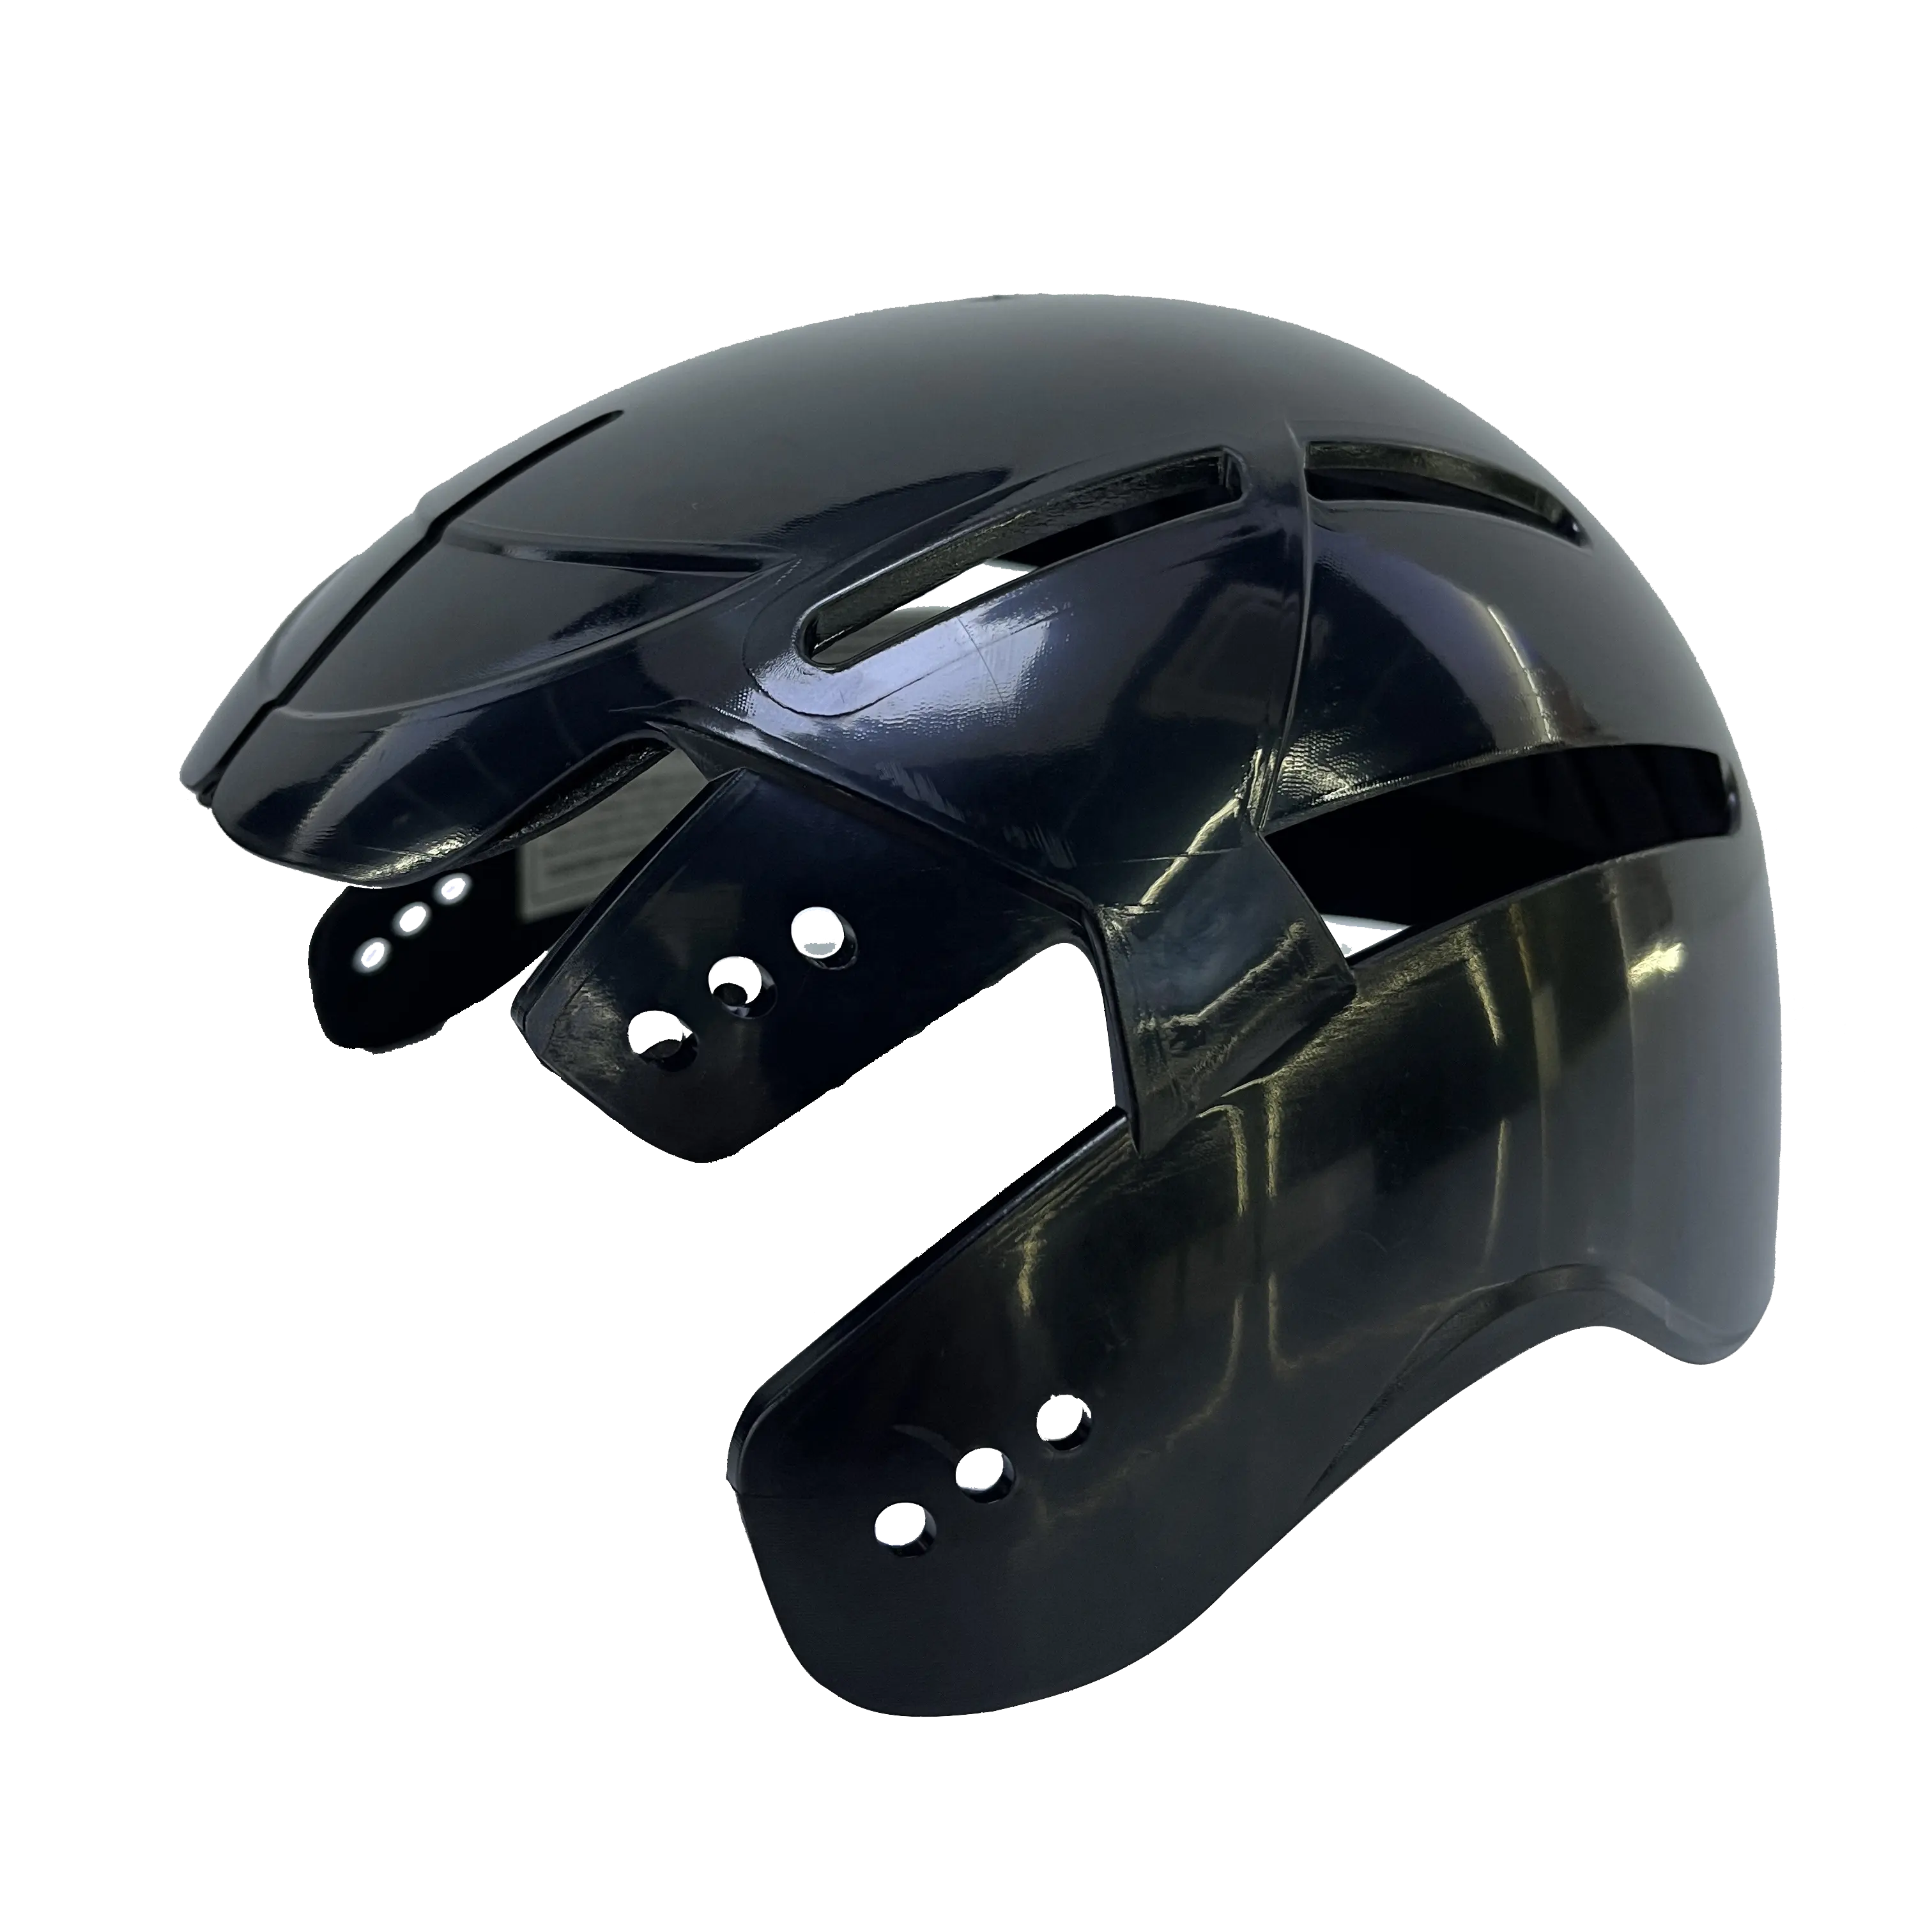 耐衝撃性タクティカルヘルメットは90% の衝撃を瞬時に吸収軽量で柔軟